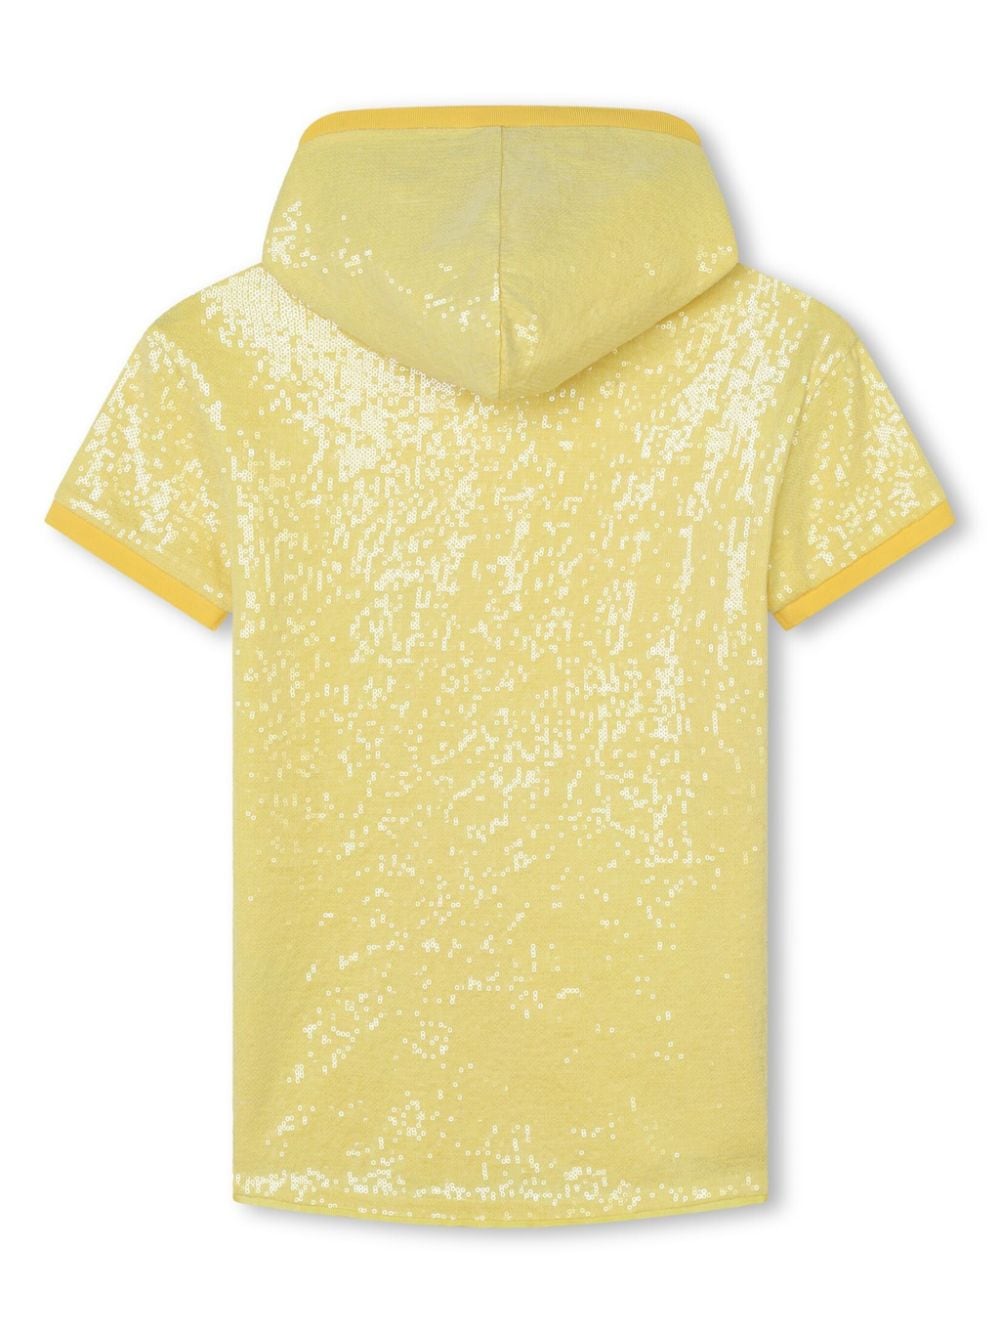 abito giallo bambina